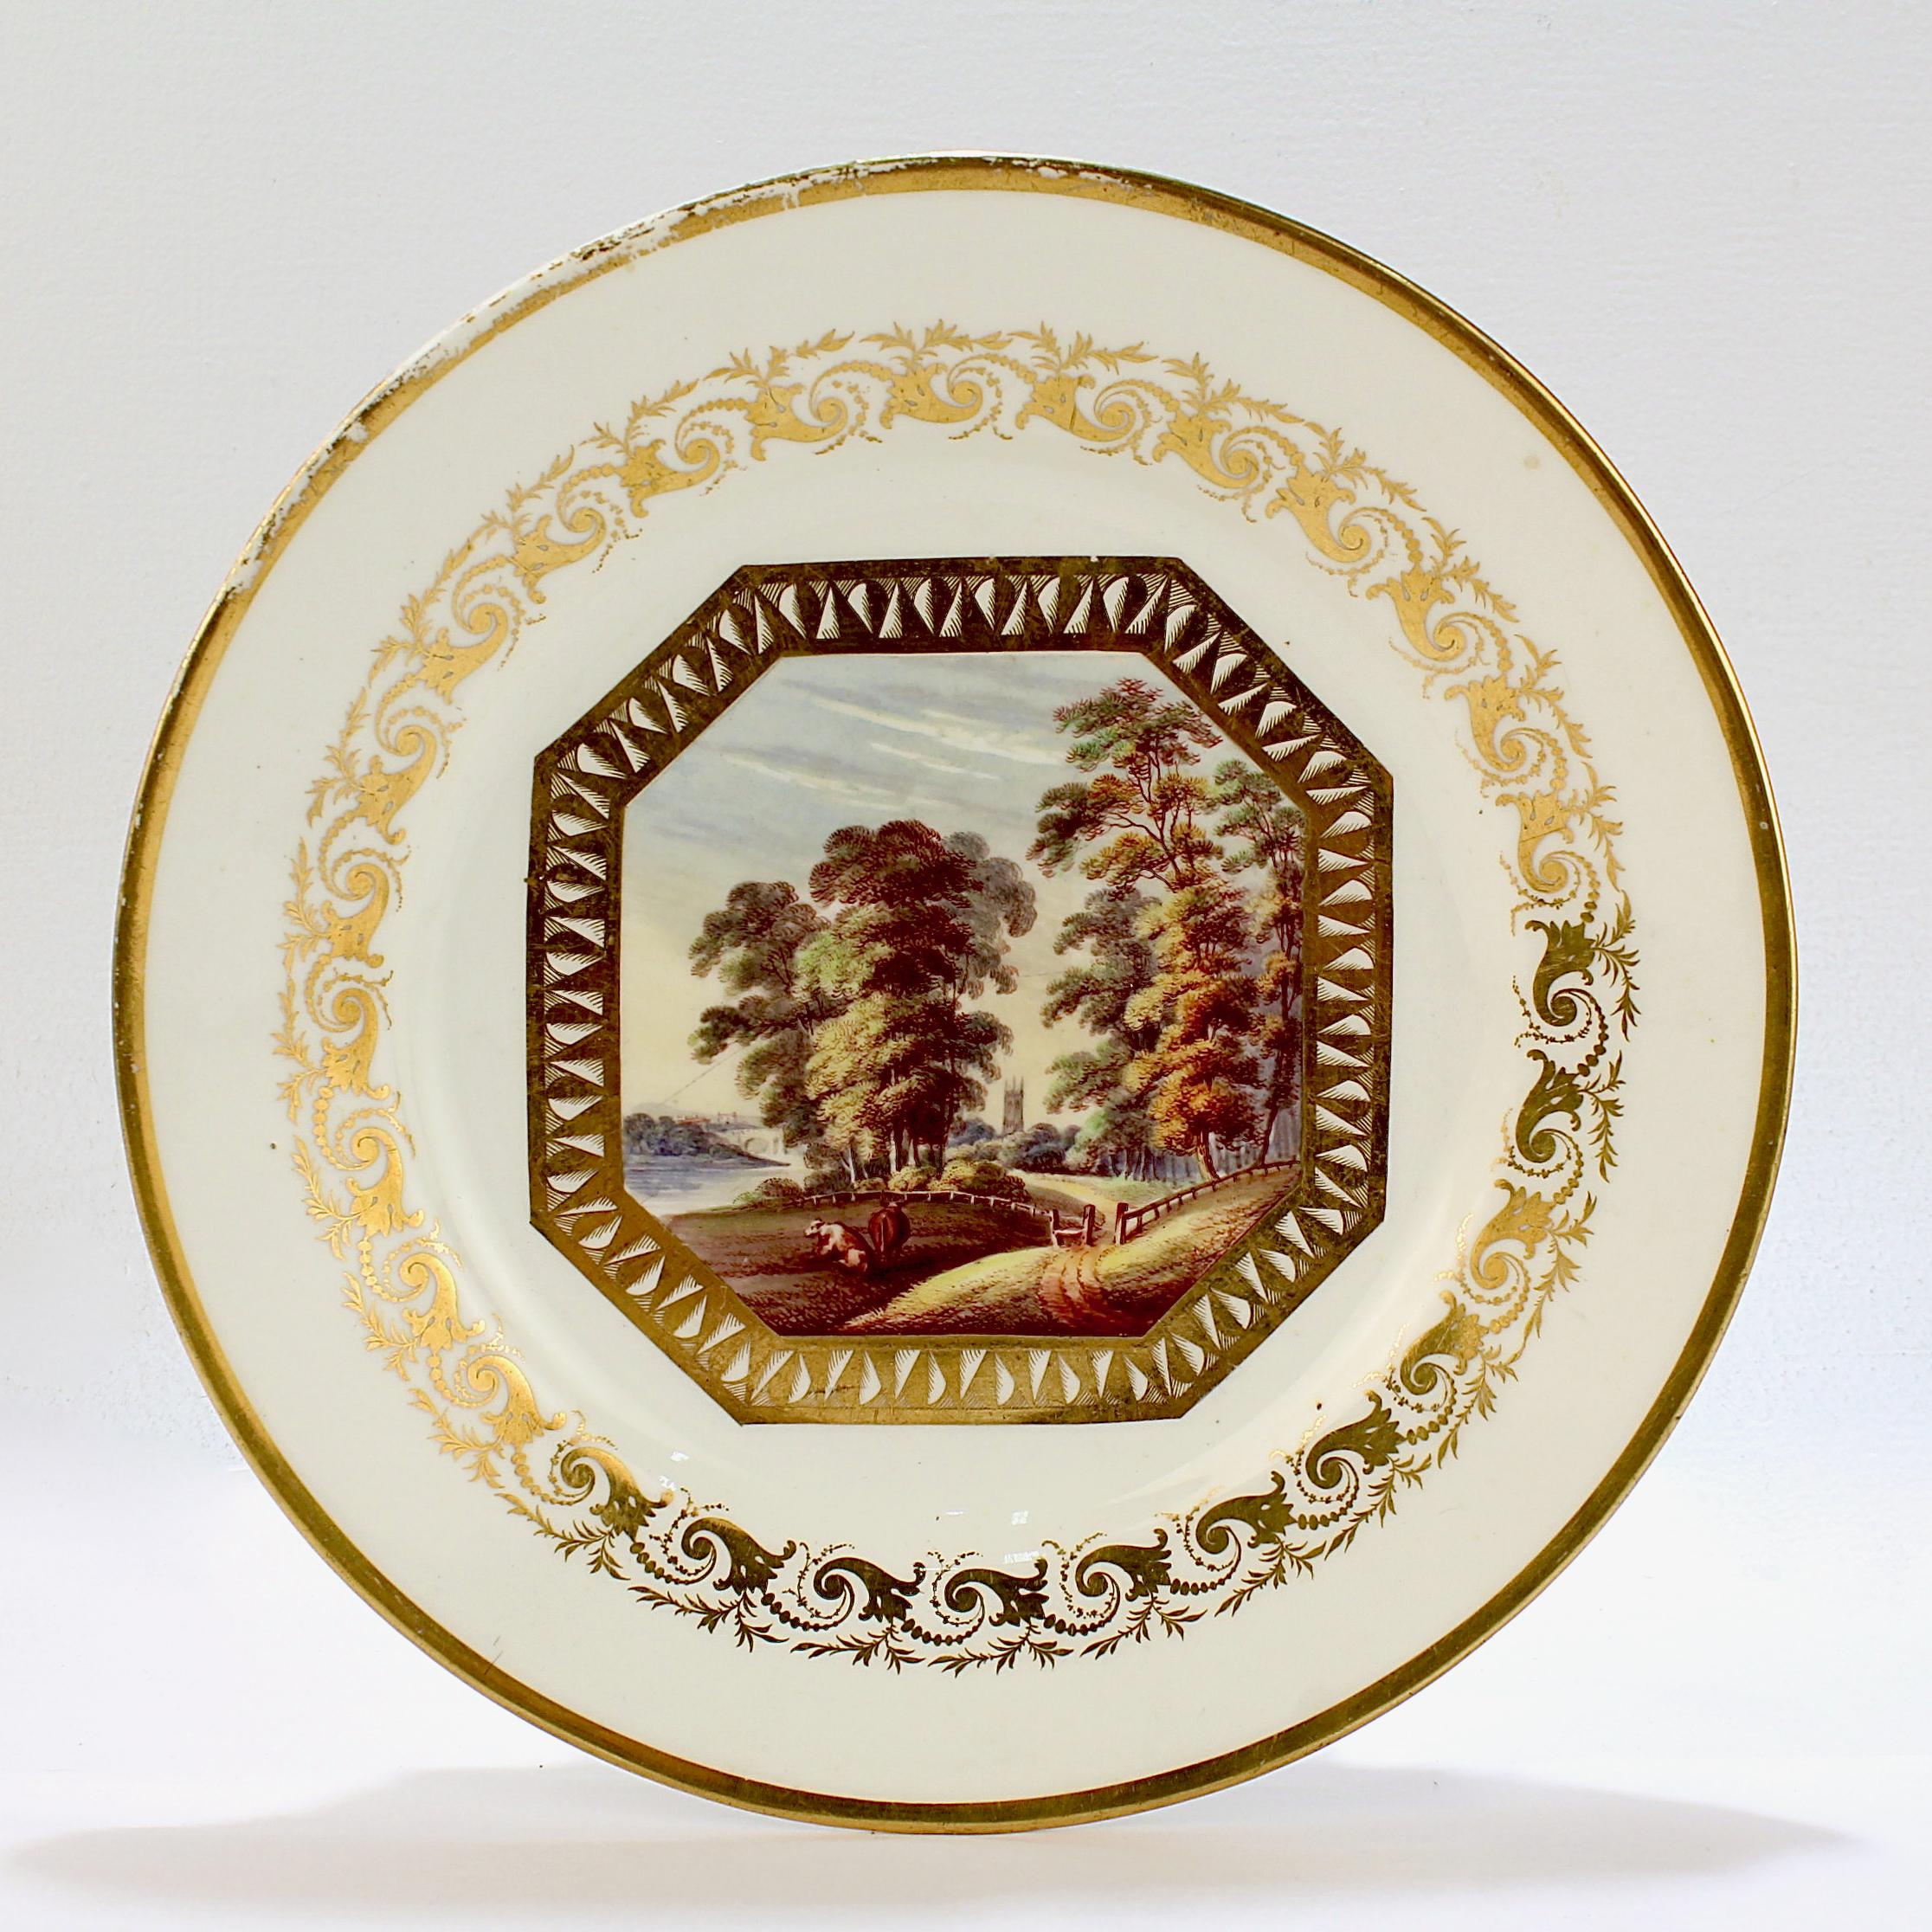 Belle assiette en porcelaine à pâte dure de Derby, datant du XIXe siècle.

Décoré d'une scène topographique peinte à la main en son centre.

La scène représente un paysage bucolique 